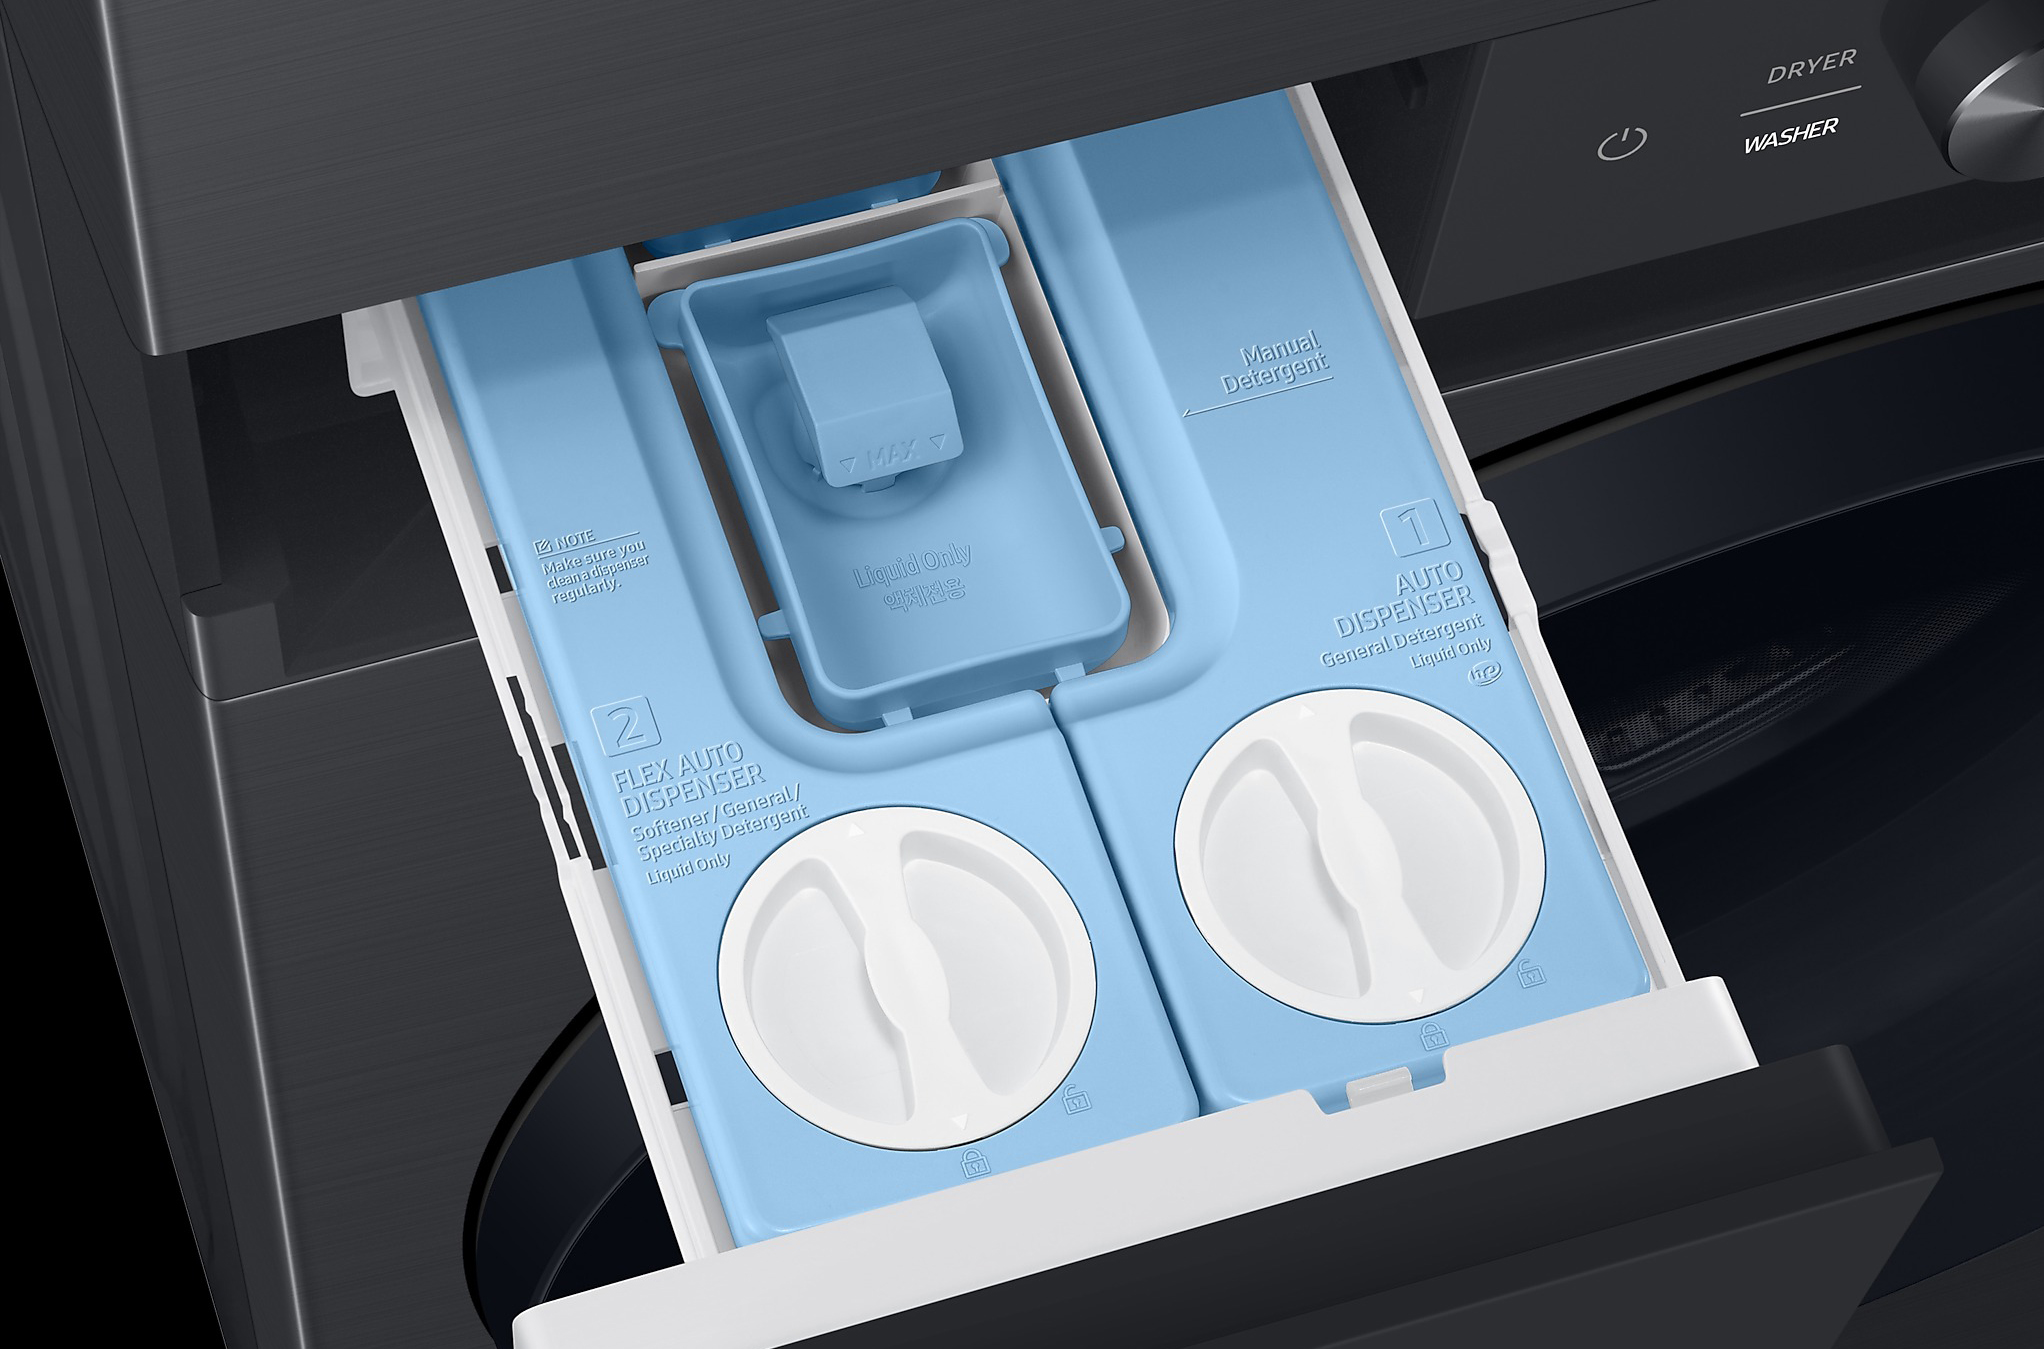 Samsung Bespoke washer dryer detergent dispenser